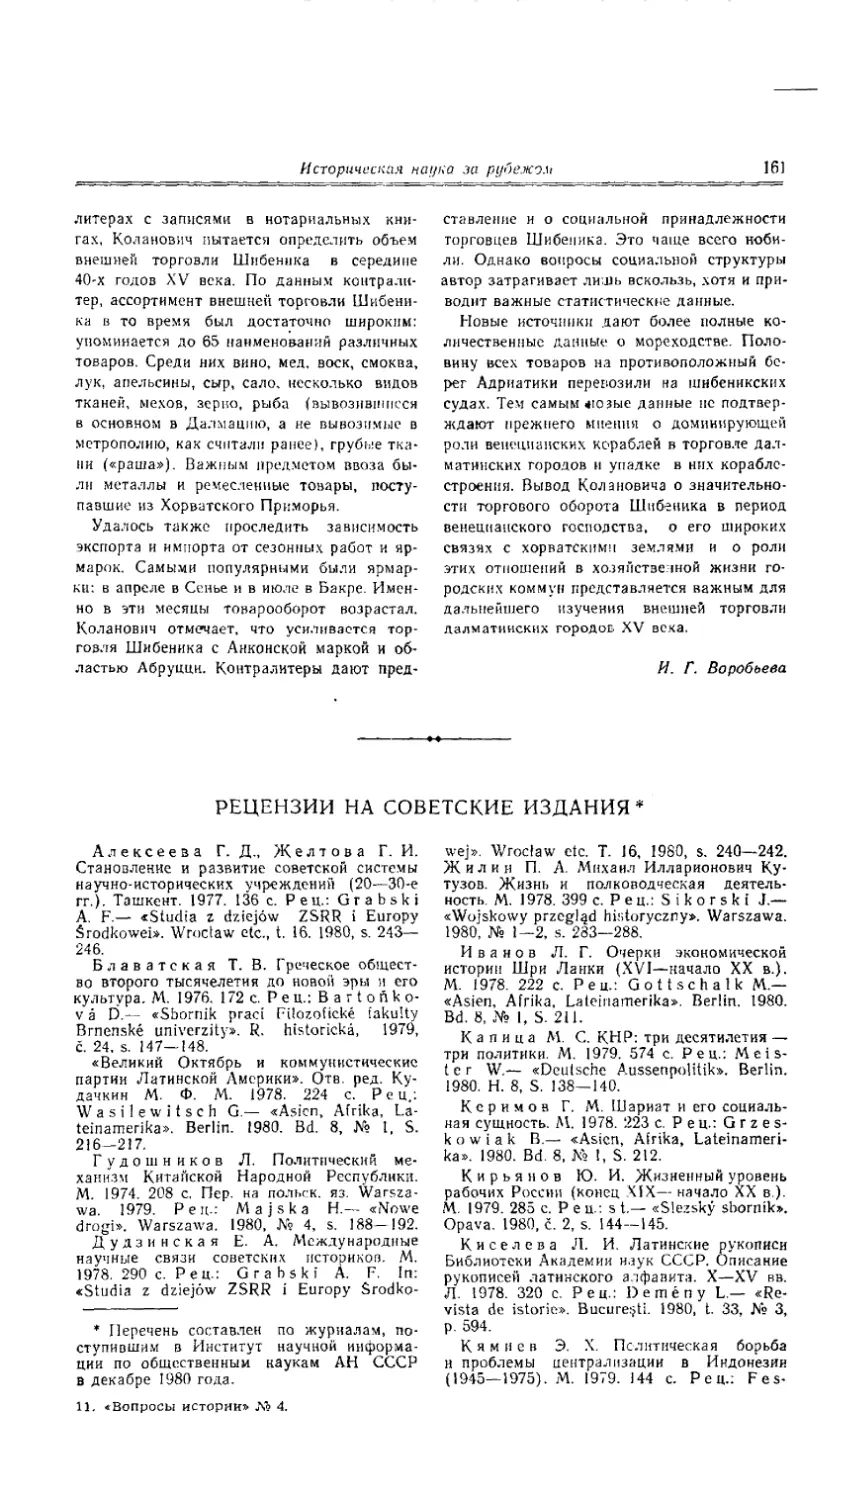 Рецензии на советские издания